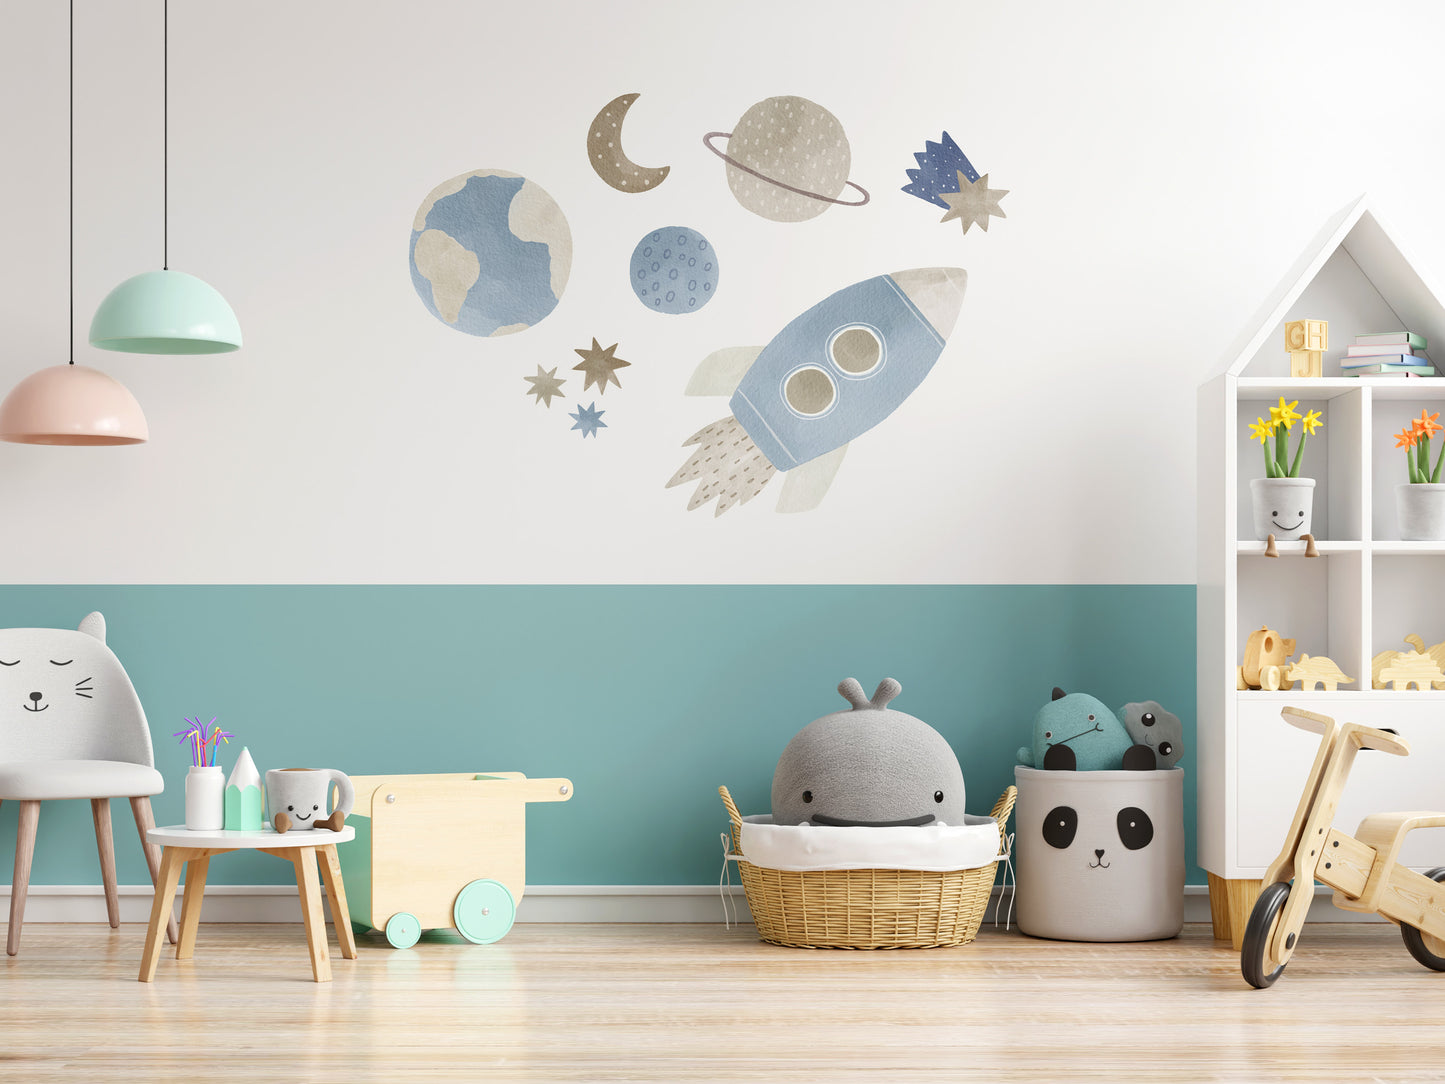 Weltraum: Rakete, Sterne und Planeten (Wandsticker/Wandtattoo) – Mural Walls